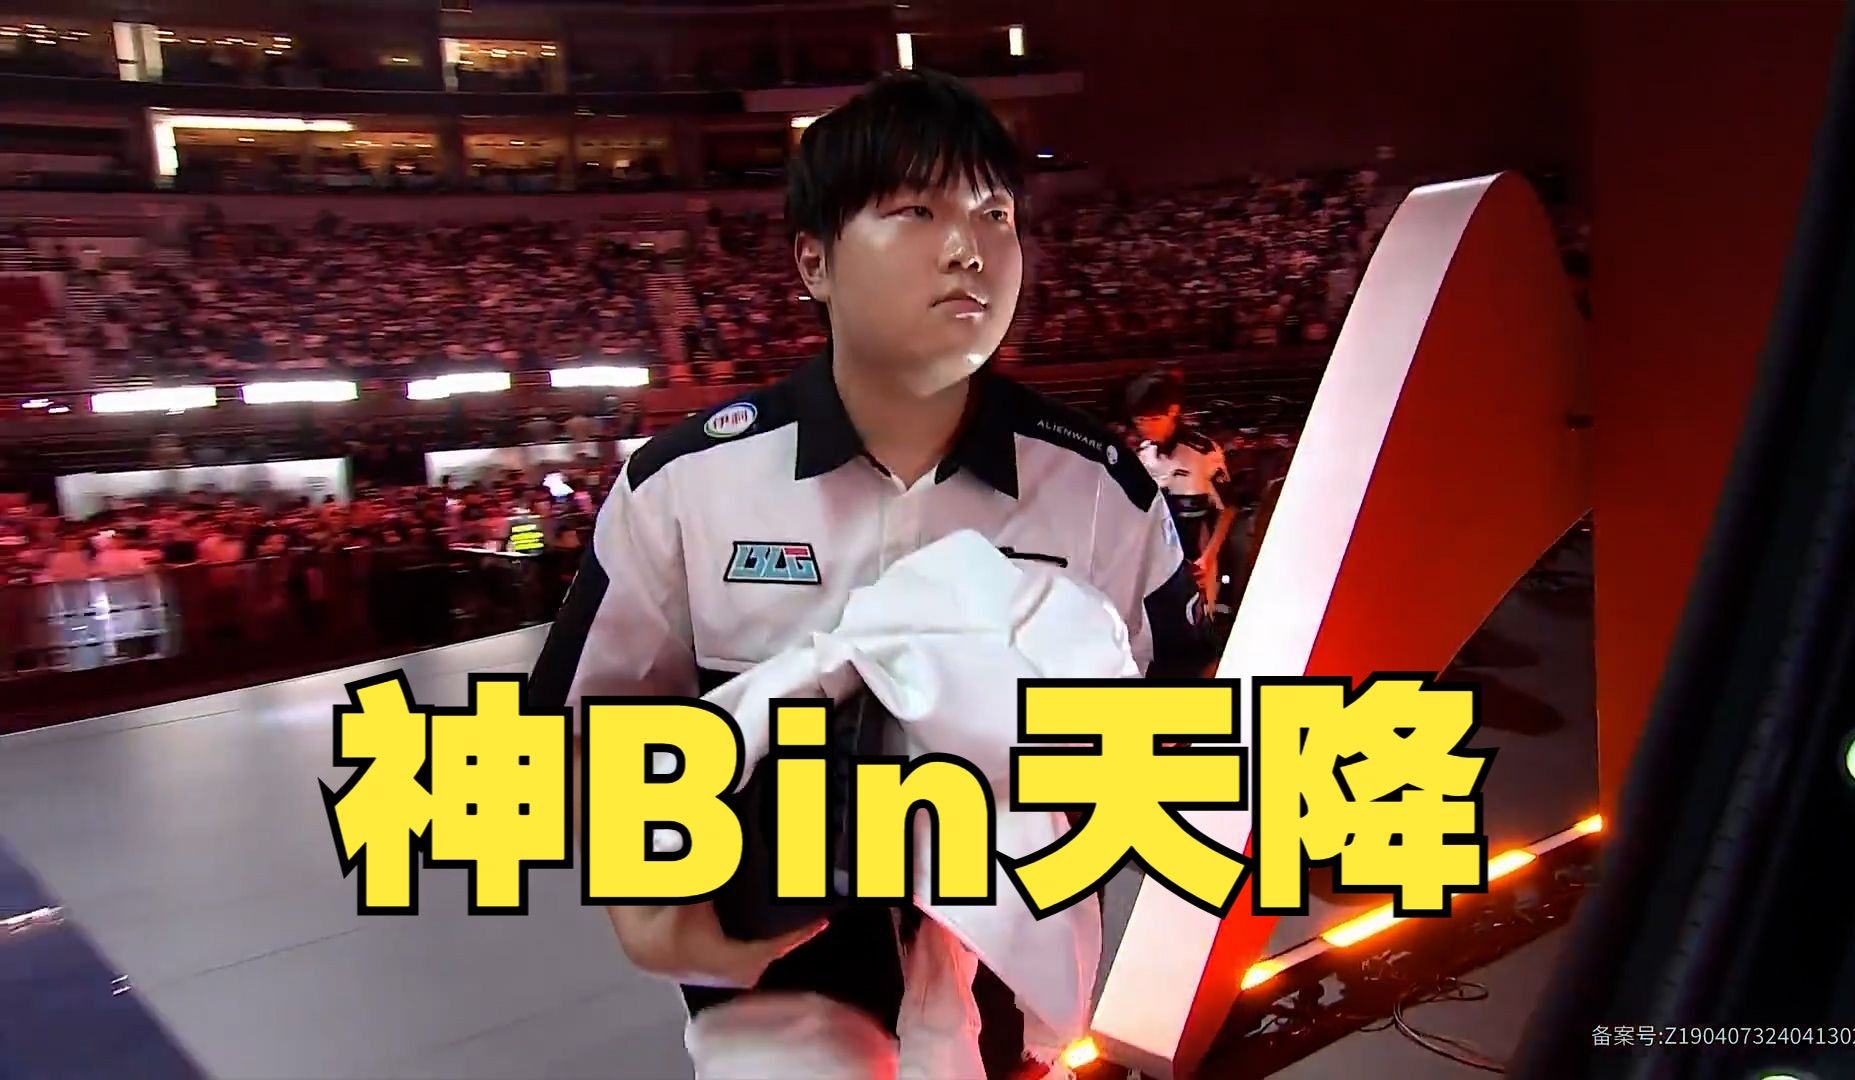 Bin：我不在乎我被击倒多少次，因为我一定会打回来！BLG VS T1 3:2!